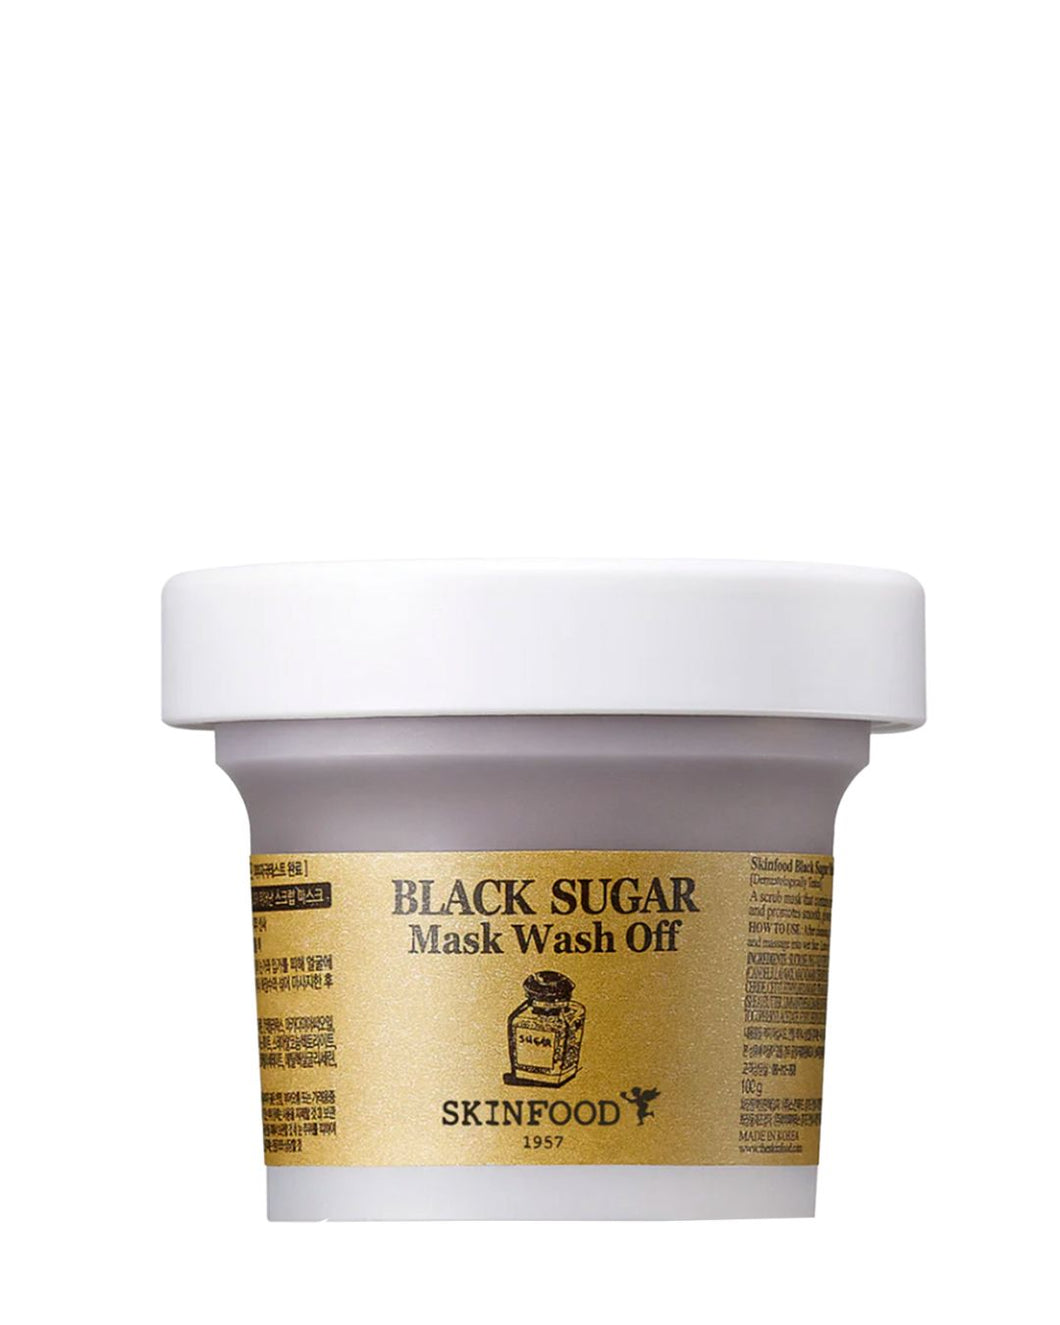 SKINFOOD - Black sugar mask wash off - 100g